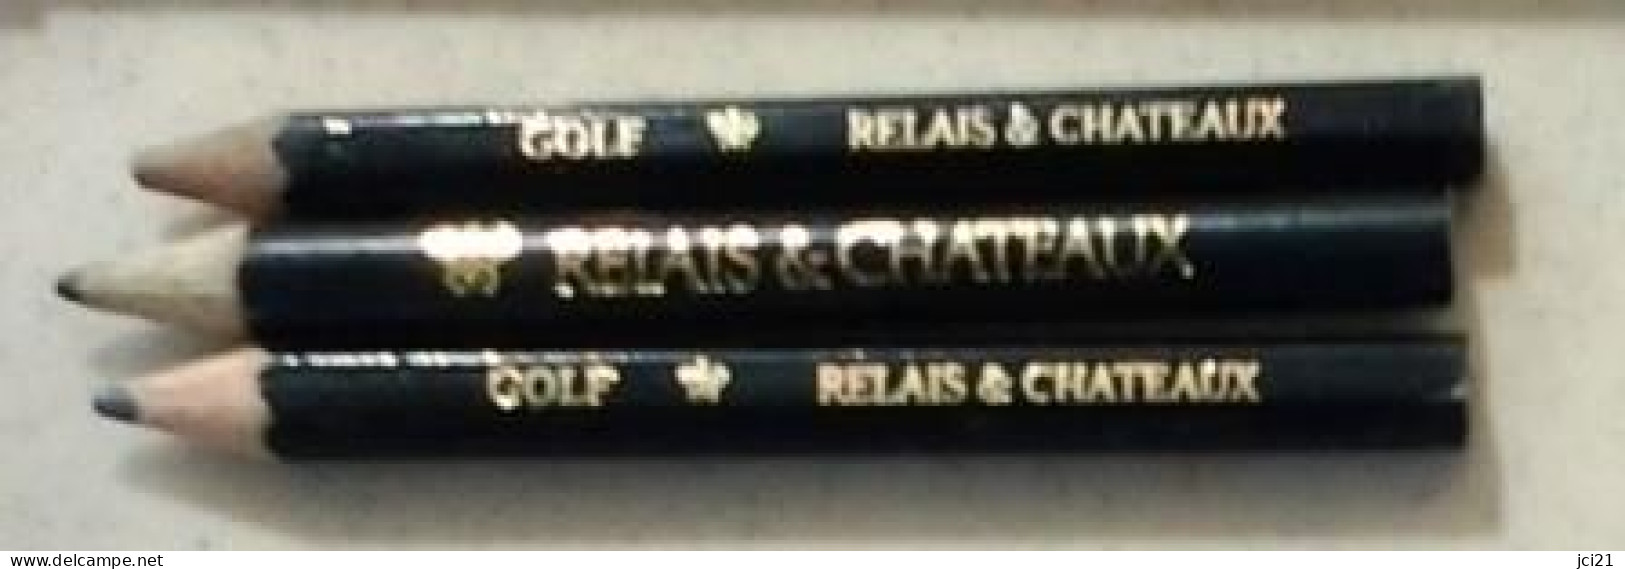 Lot De 3 Crayons " RELAIS & CHATEAUX Et GOLF RELAIS & CHATEAUX " (Bte Stylo) _Di397 - Schreibgerät